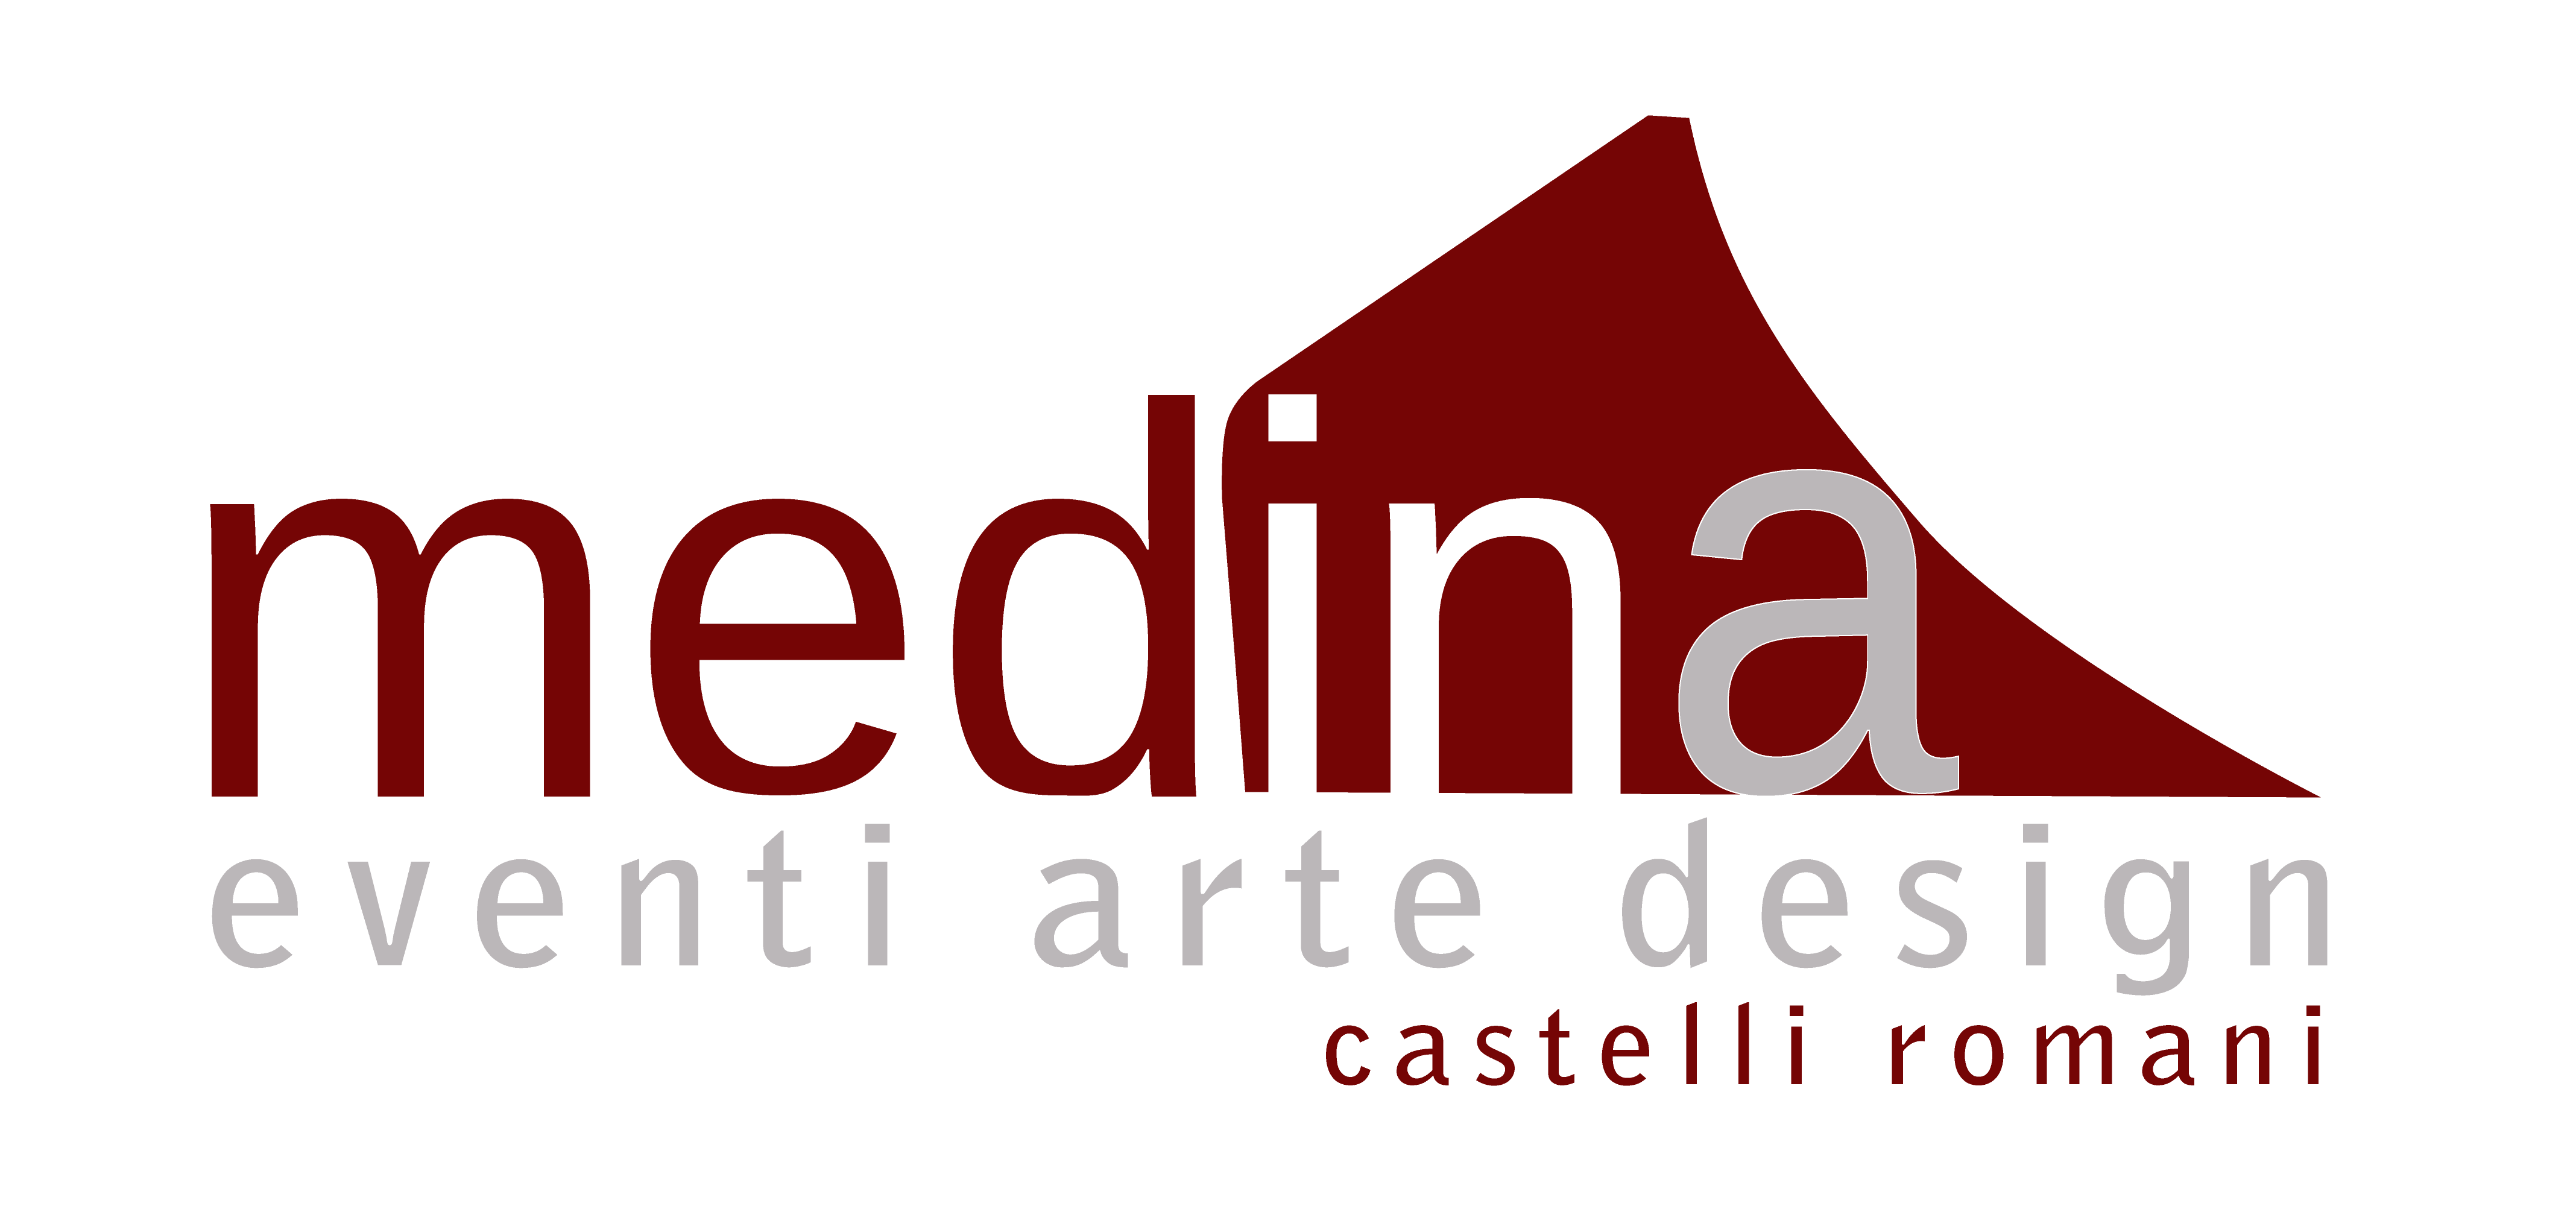 Medina Art Gallery Castelli Romani